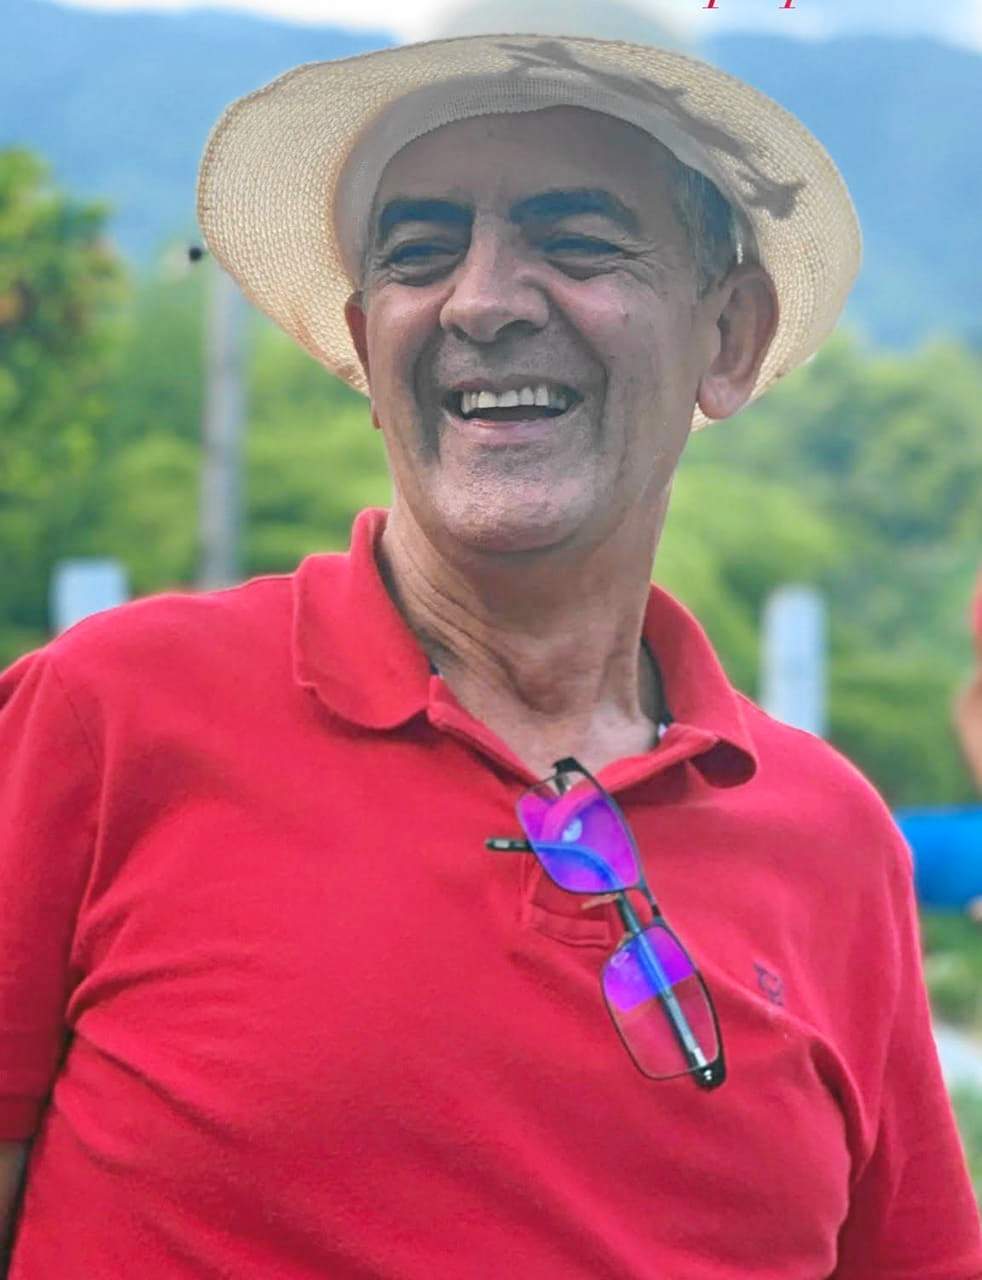 Foto | Cortesía | LA PATRIA A los 66 años falleció Juan José Gómez Rivera reconocido comerciante de Manzanares. Fue diputado, concejal y secretario de Educación de Manzanares. Las exequias se cumplieron en Armenia donde vivía actualmente. Juan José era oriundo de Montebonito (Marulanda).